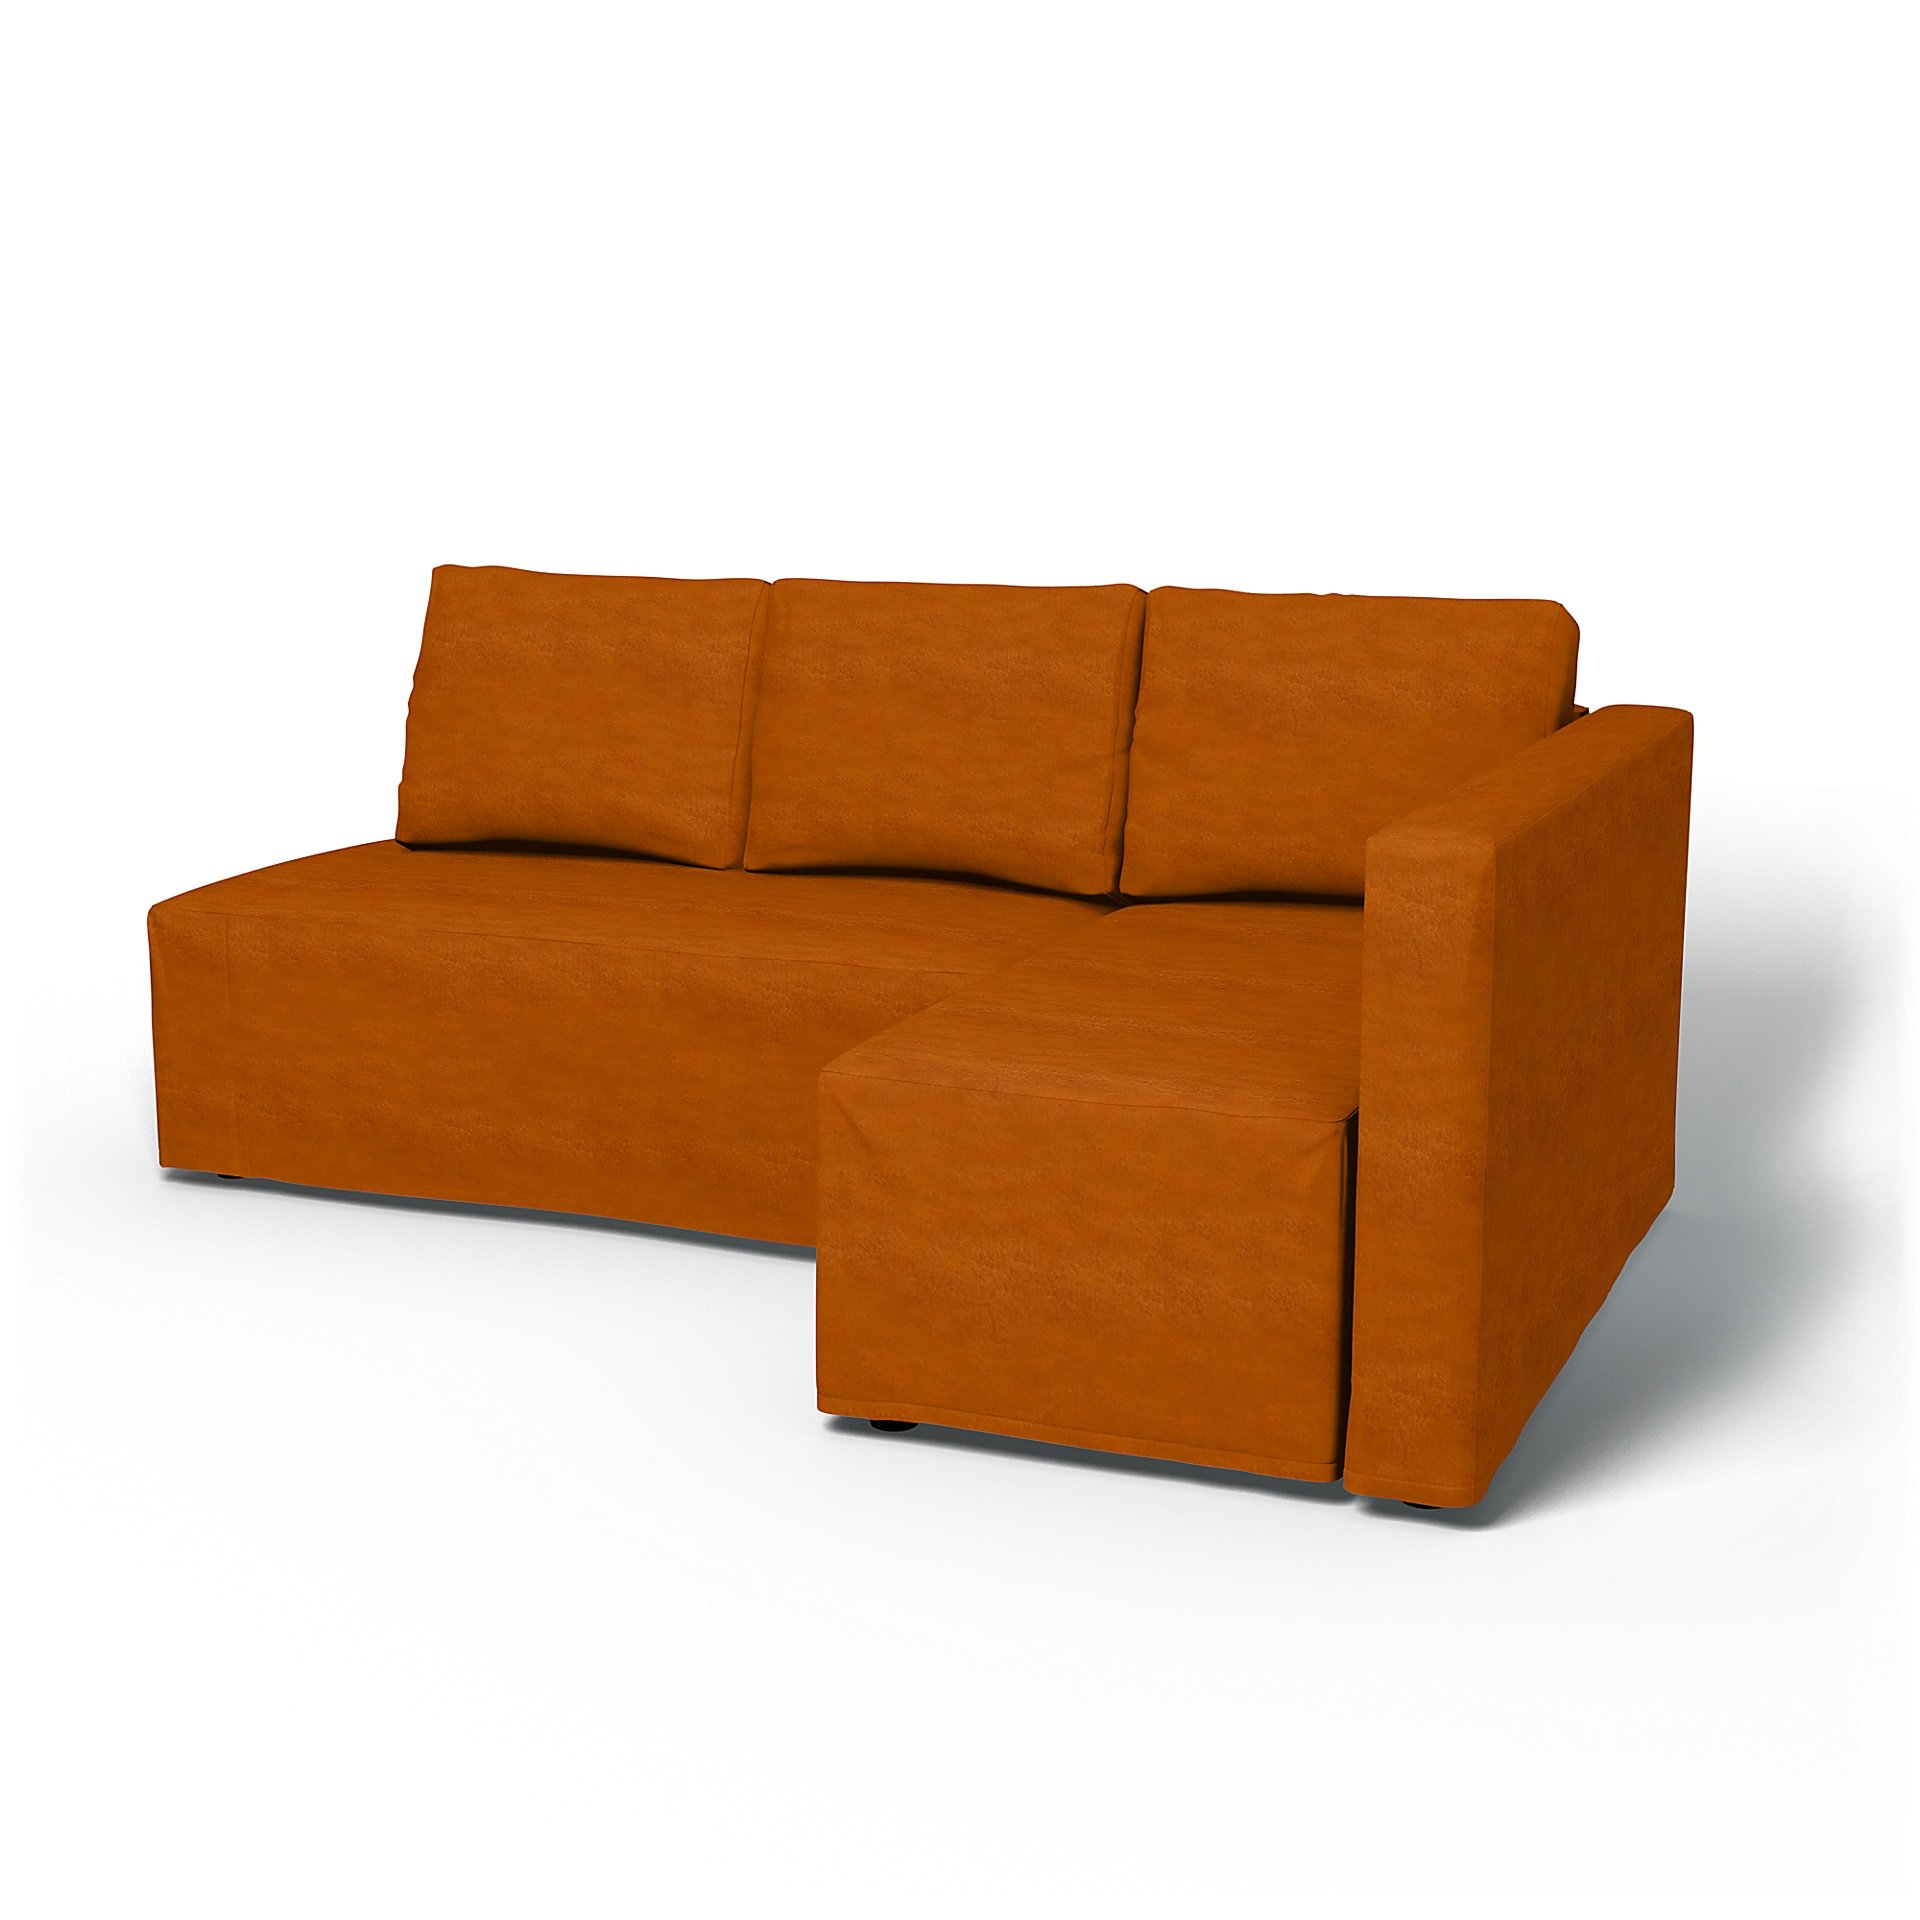 IKEA - Friheten Sofa Bed with Right Chaise Cover, Cognac, Velvet - Bemz